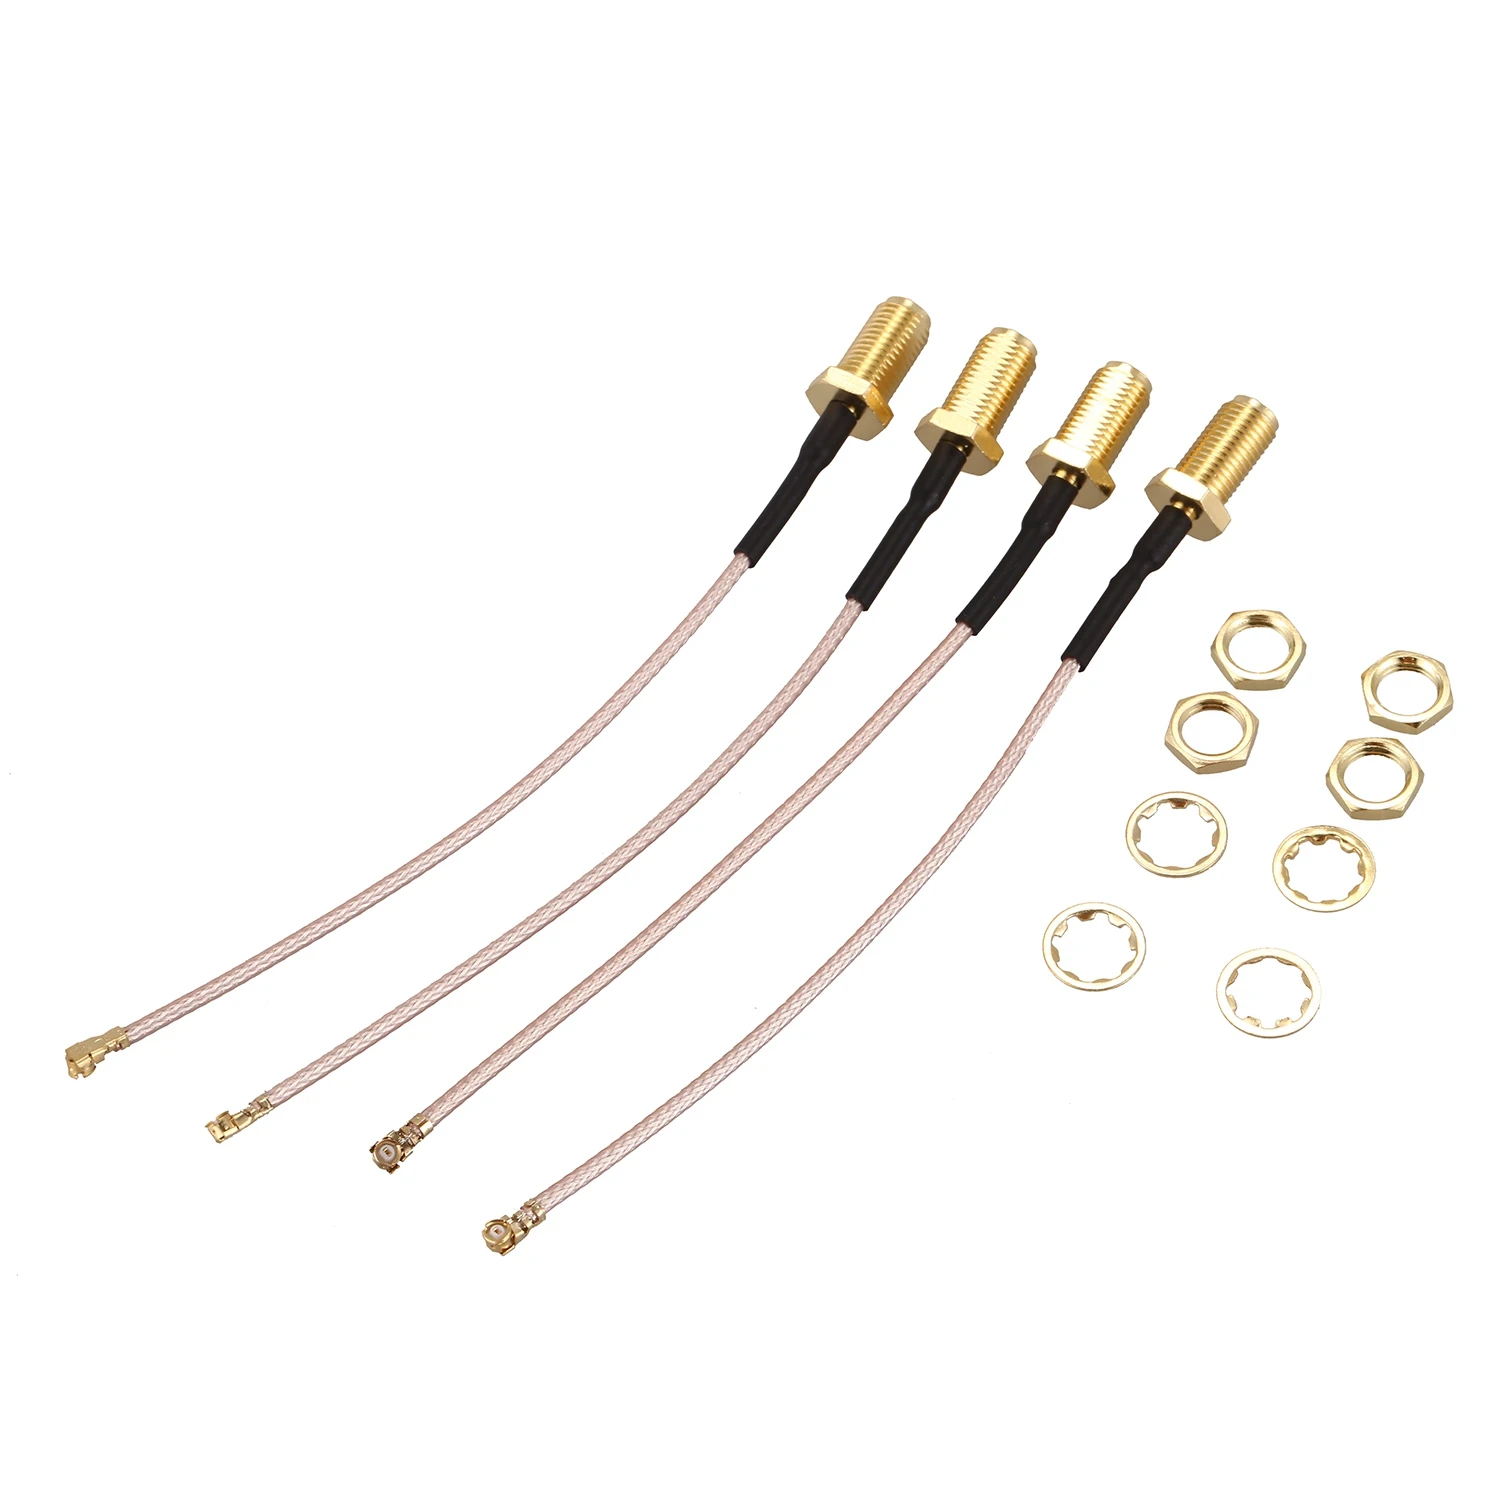 Упаковка из 4 RF U. FL(IPEX/IPX) Мини PCI для RP-SMA женский Пигтейл/провод для антенны Wi-Fi коаксиальный RG-178 кабель с низкой потерей(4 дюйма(10 см